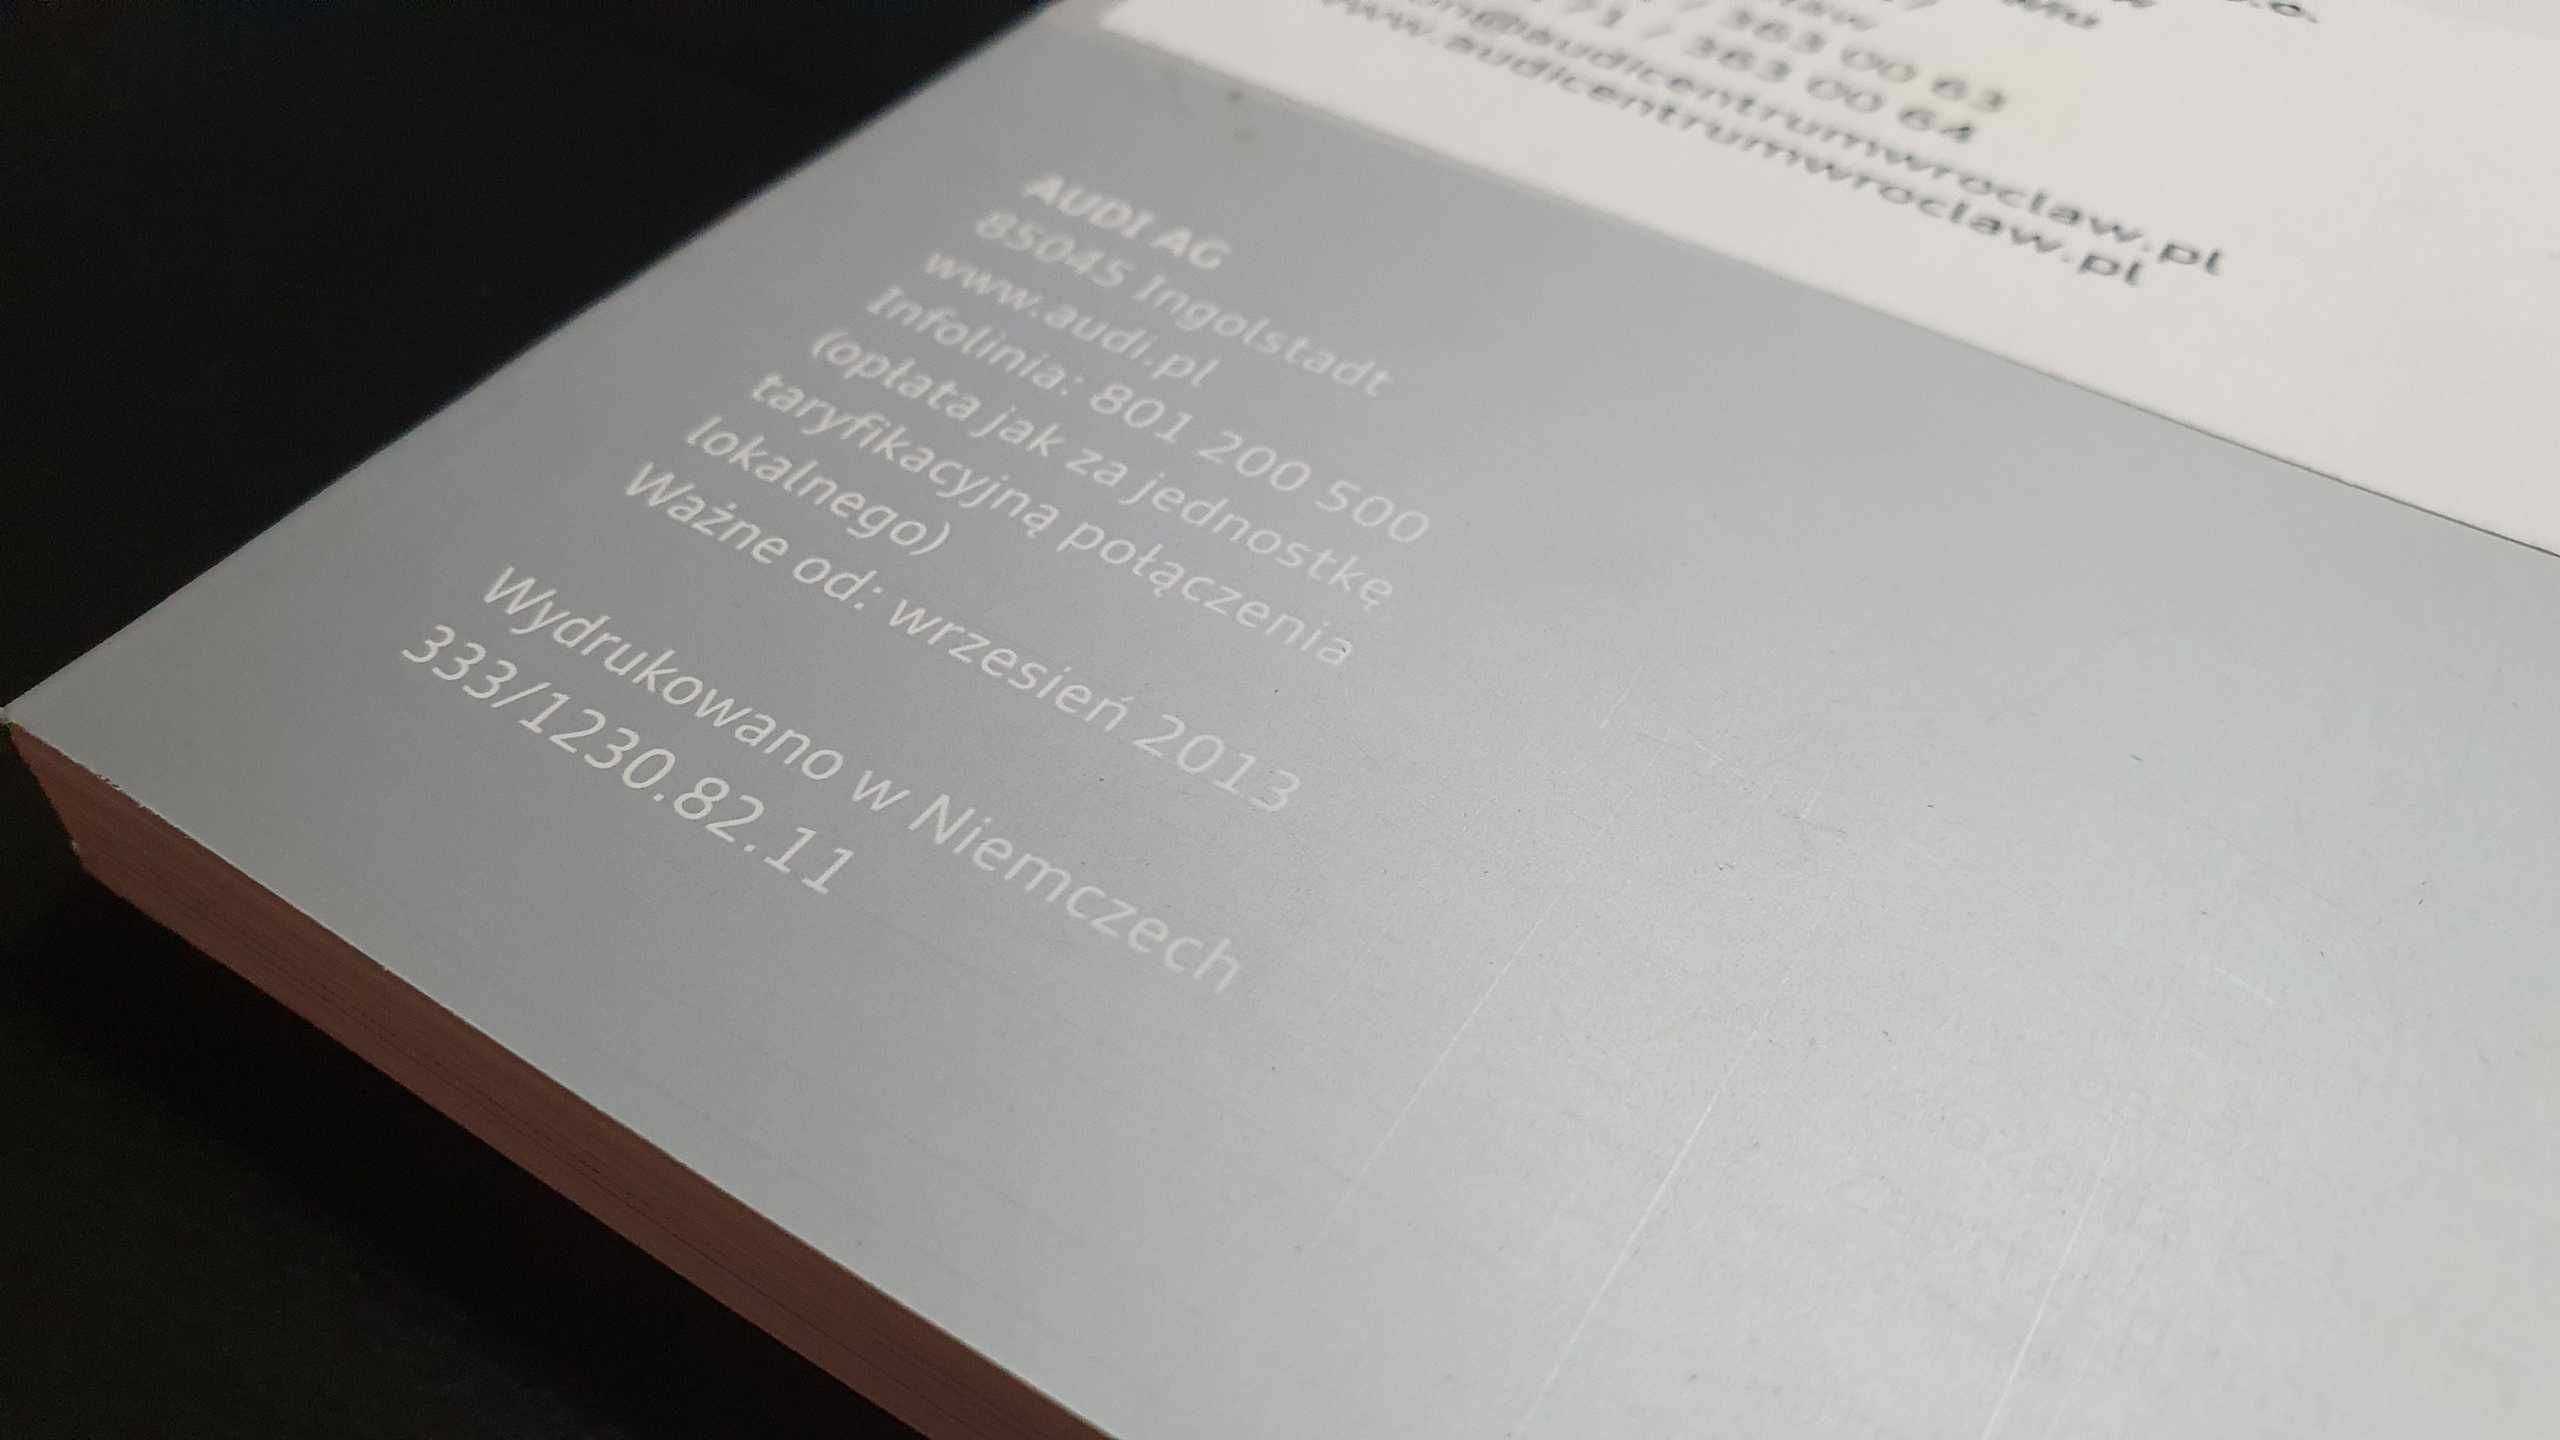 Prospekt Katalog Audi A8/A8L | PL 2013